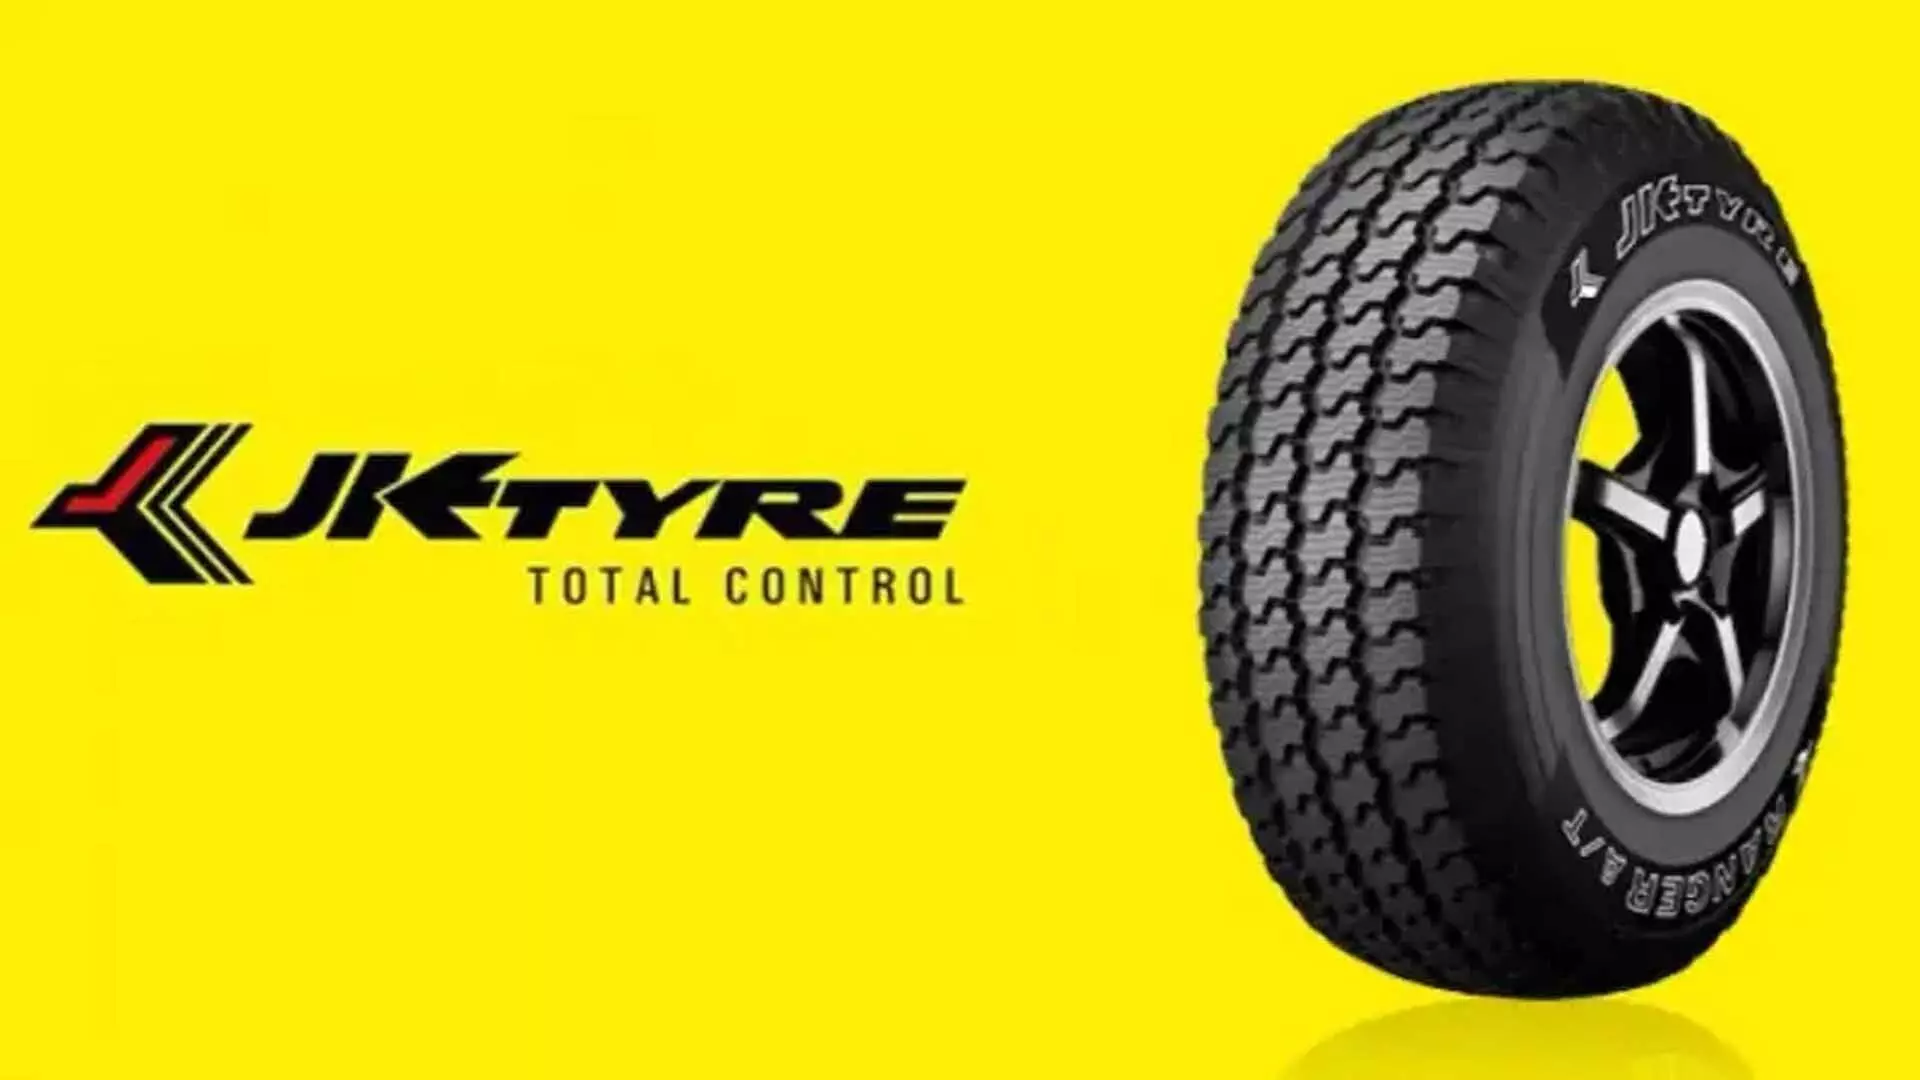 JK Tyre का पहली तिमाही का शुद्ध लाभ 37 प्रतिशत बढ़कर 211 करोड़ रुपये हुआ